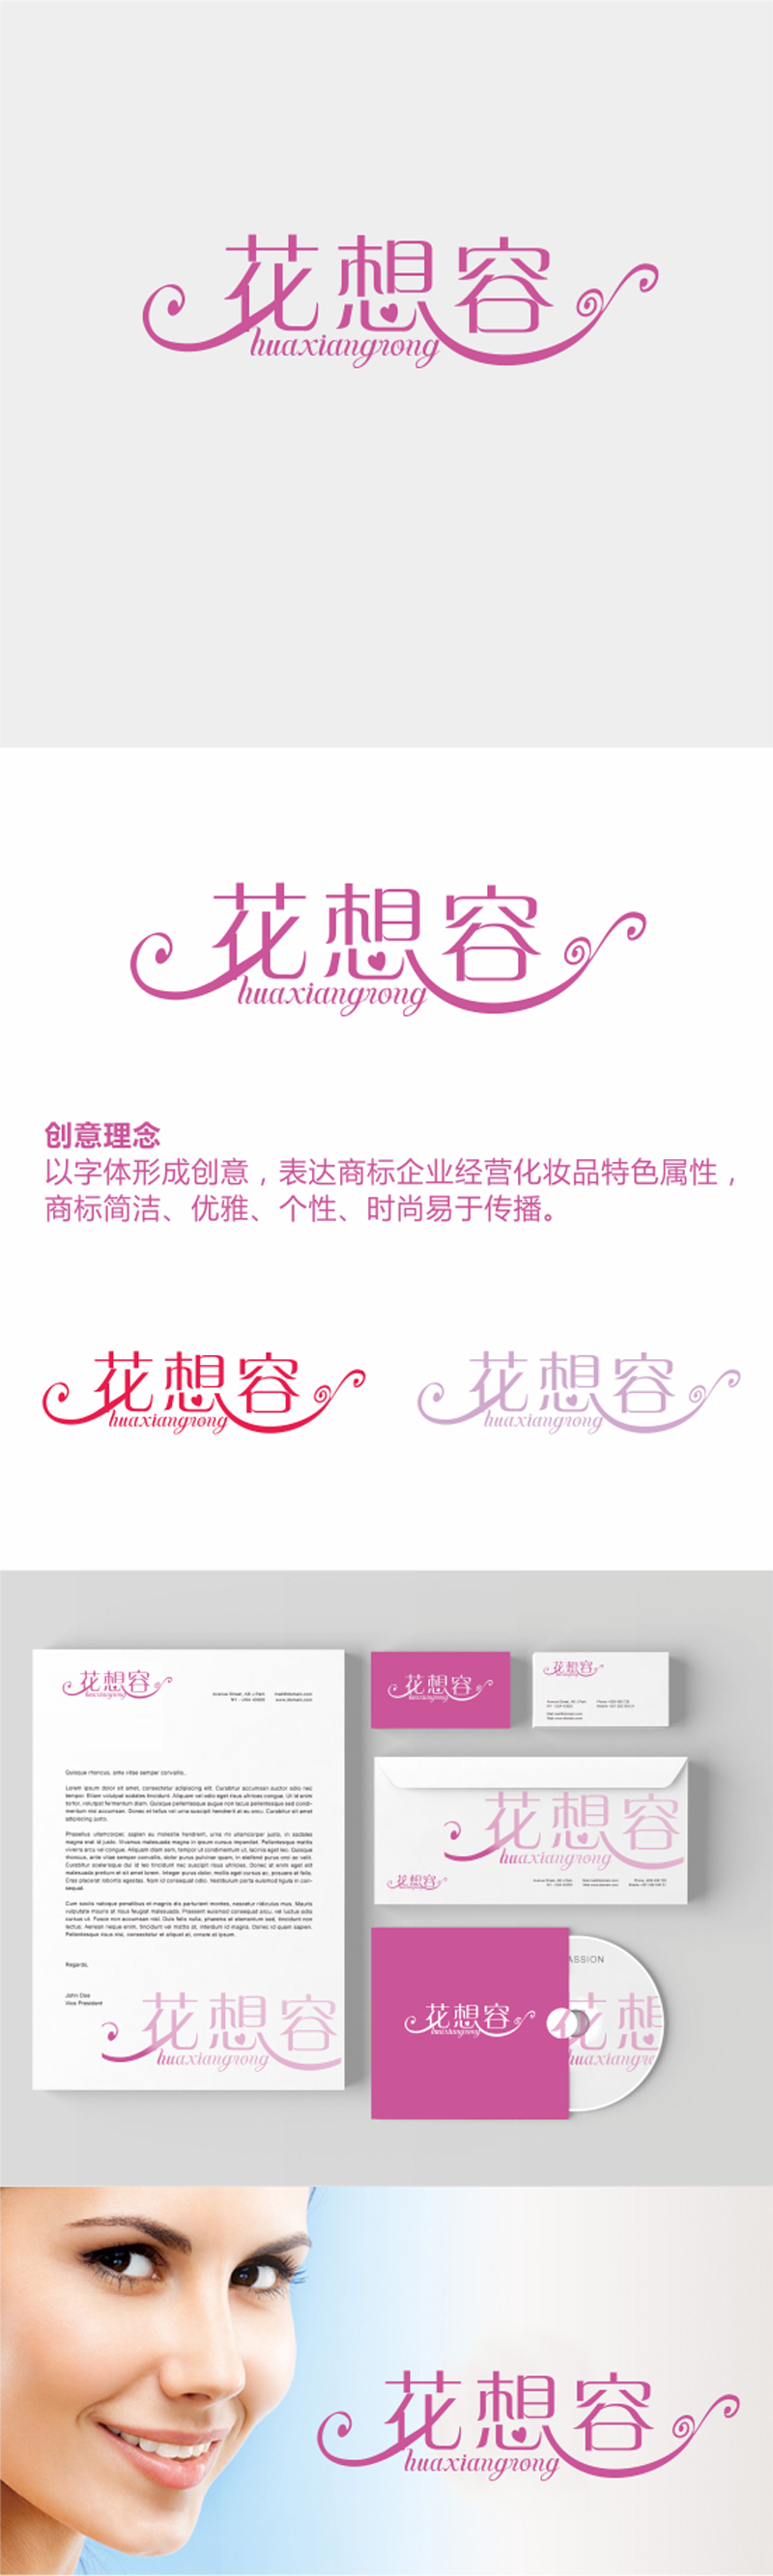 刘彩云的花想容logo设计